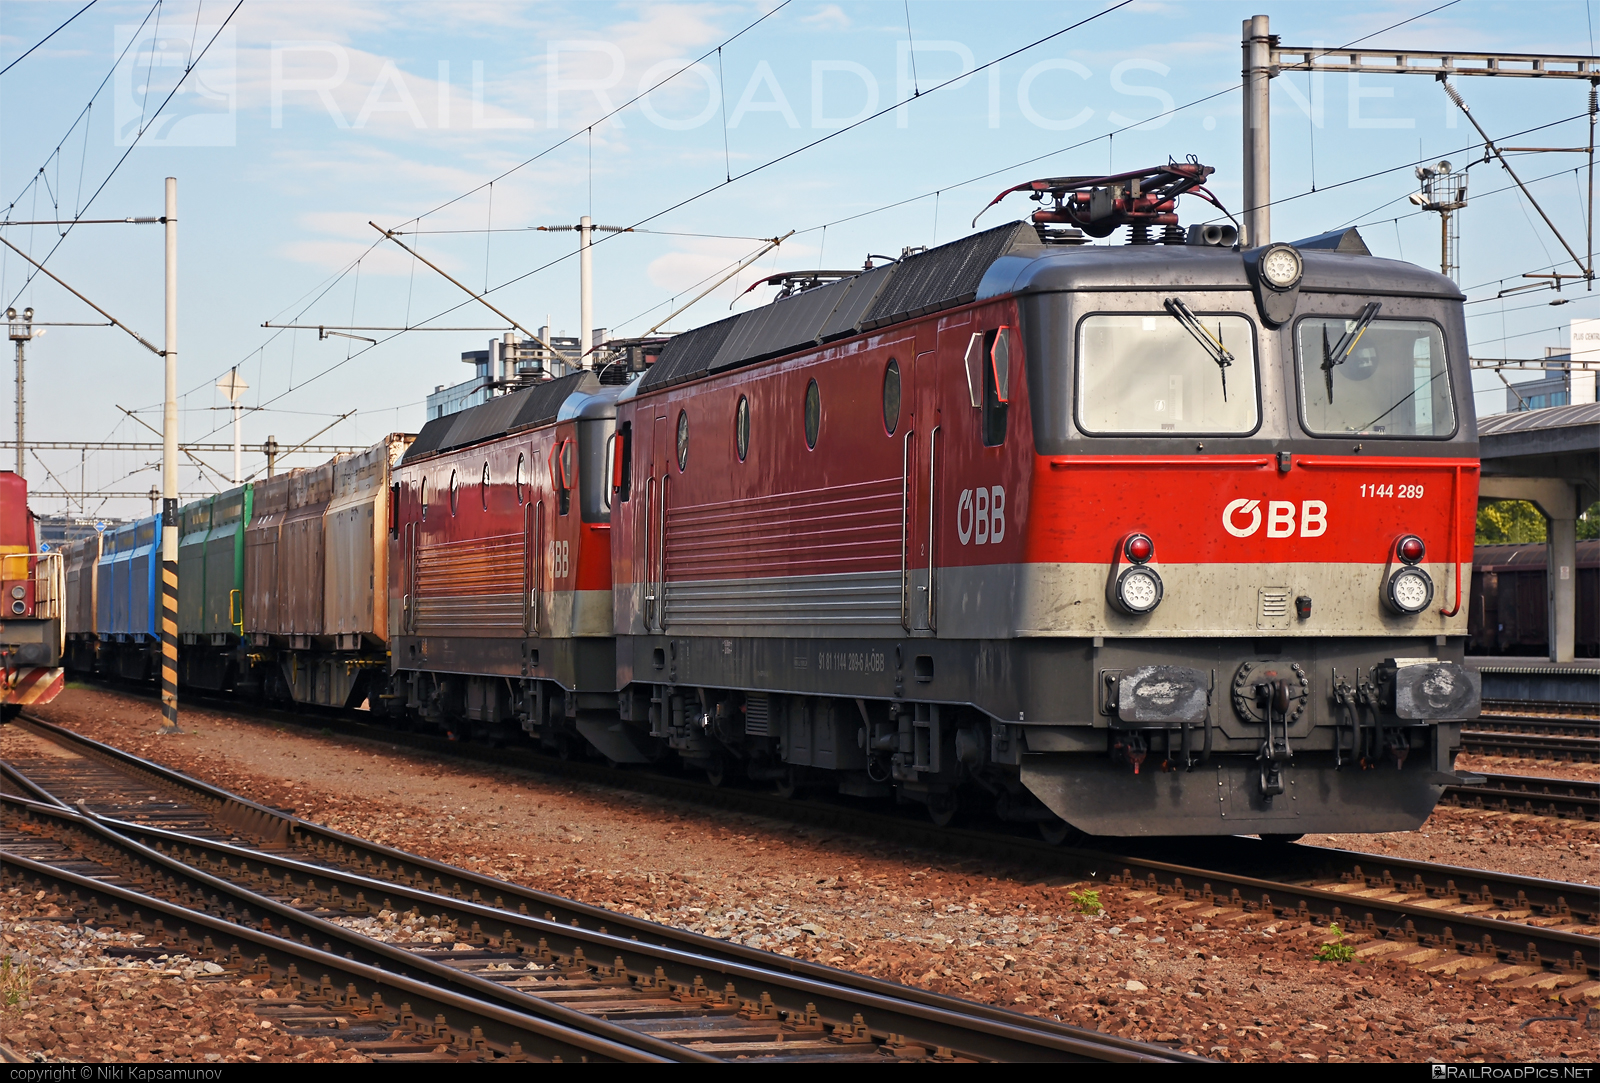 SGP 1144 - 1144 289 operated by Rail Cargo Austria AG #flatwagon #innofreight #obb #obb1144 #obbClass1144 #osterreichischebundesbahnen #rcw #sgp #sgp1144 #simmeringgrazpauker